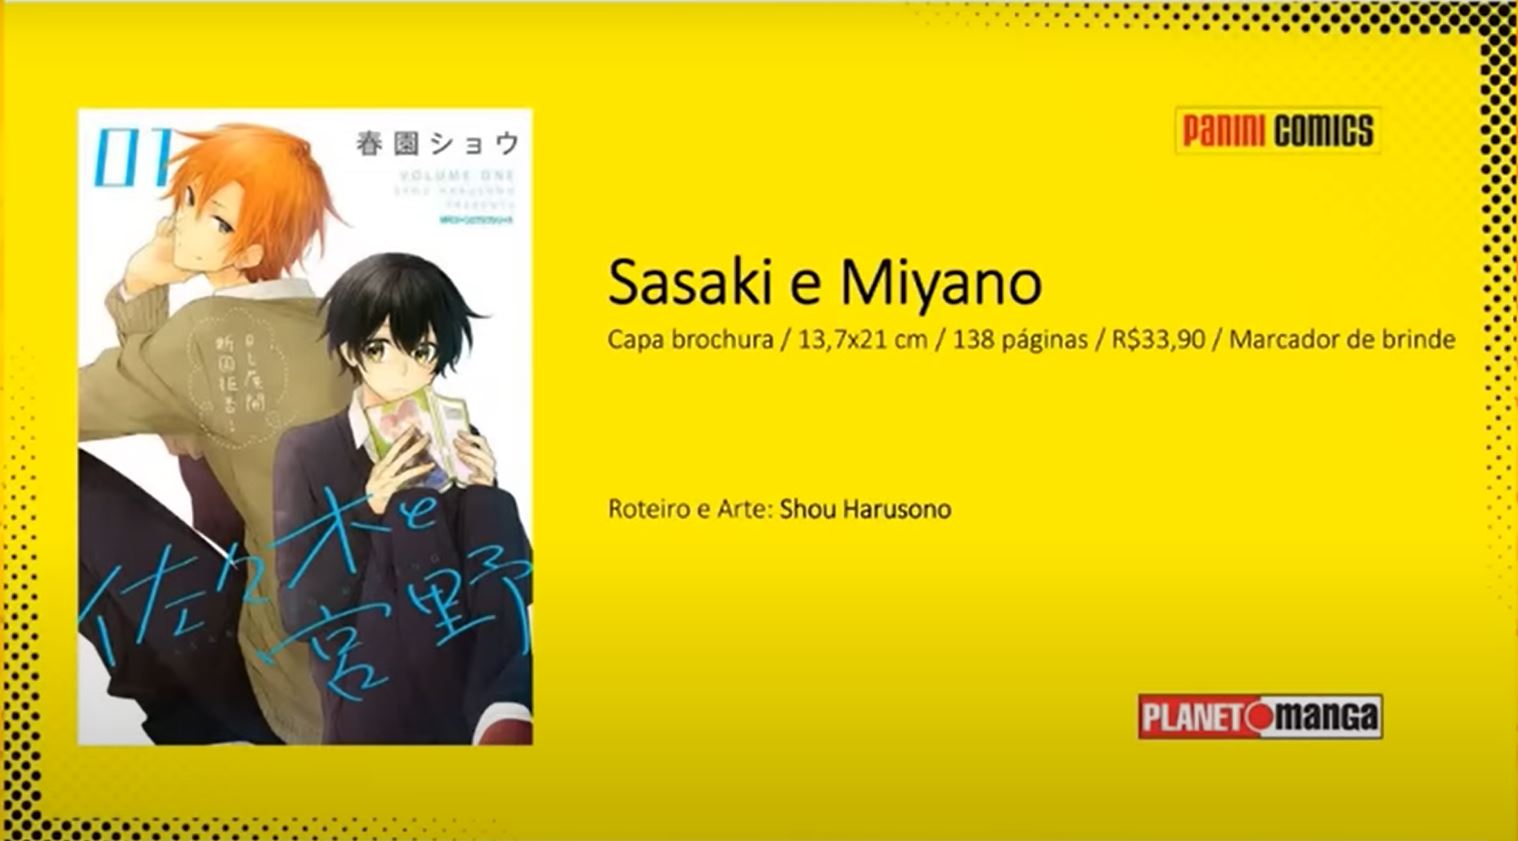 Filme em anime e episódio spin-off de Sasaki and Miyano são confirmados  para 2023 - Crunchyroll Notícias